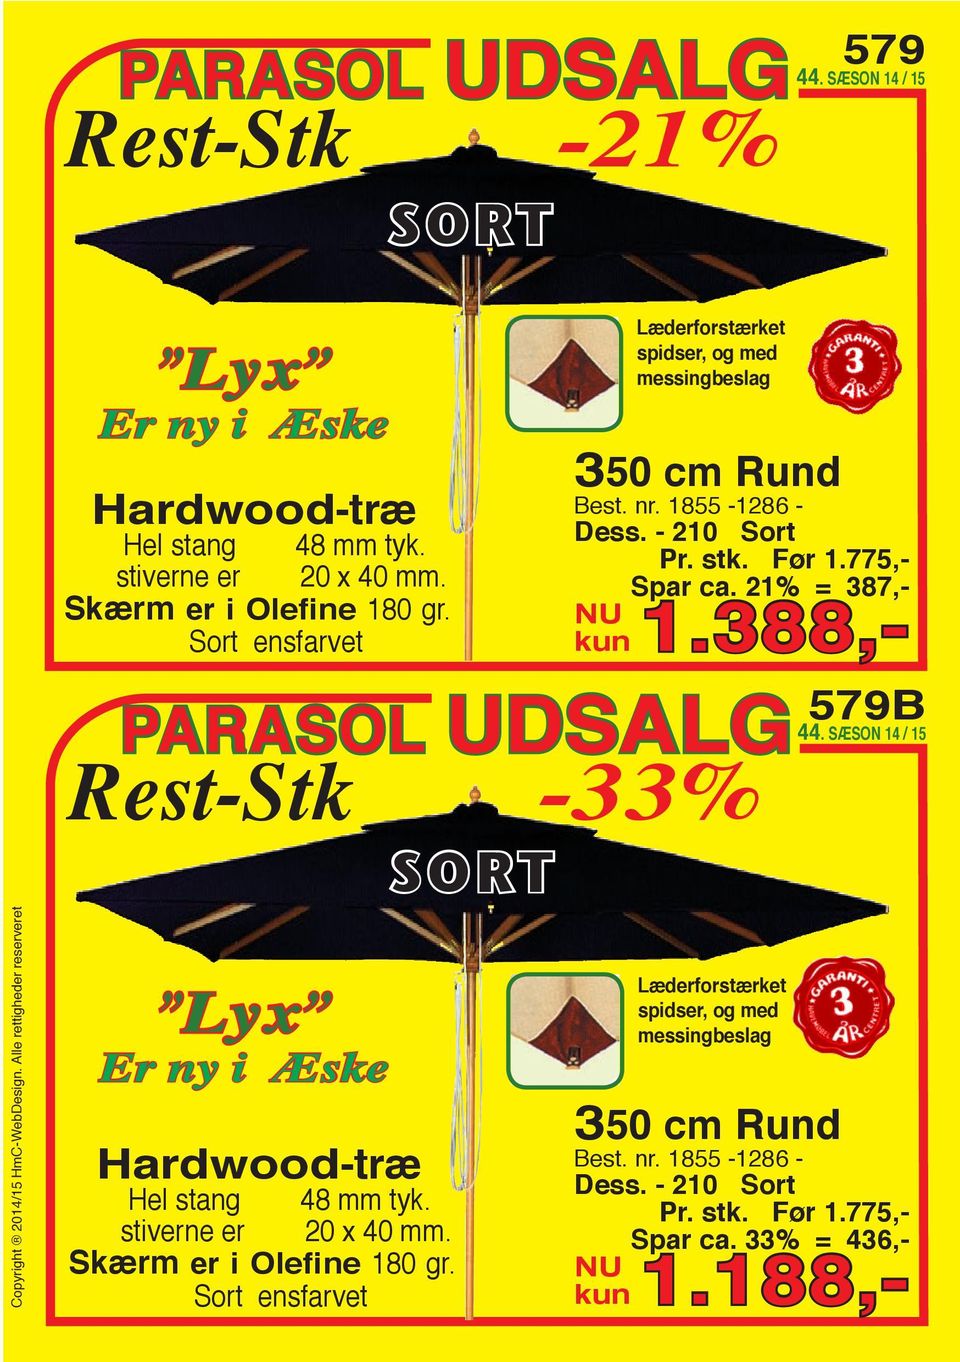 21% = 387,- kun 1.388,- Rest-Stk -33% Lyx Er ny i Æske Hardwood-træ Hel stang 48 mm tyk. stiverne er 20 x 40 mm. Skærm er i Olefine 180 gr.